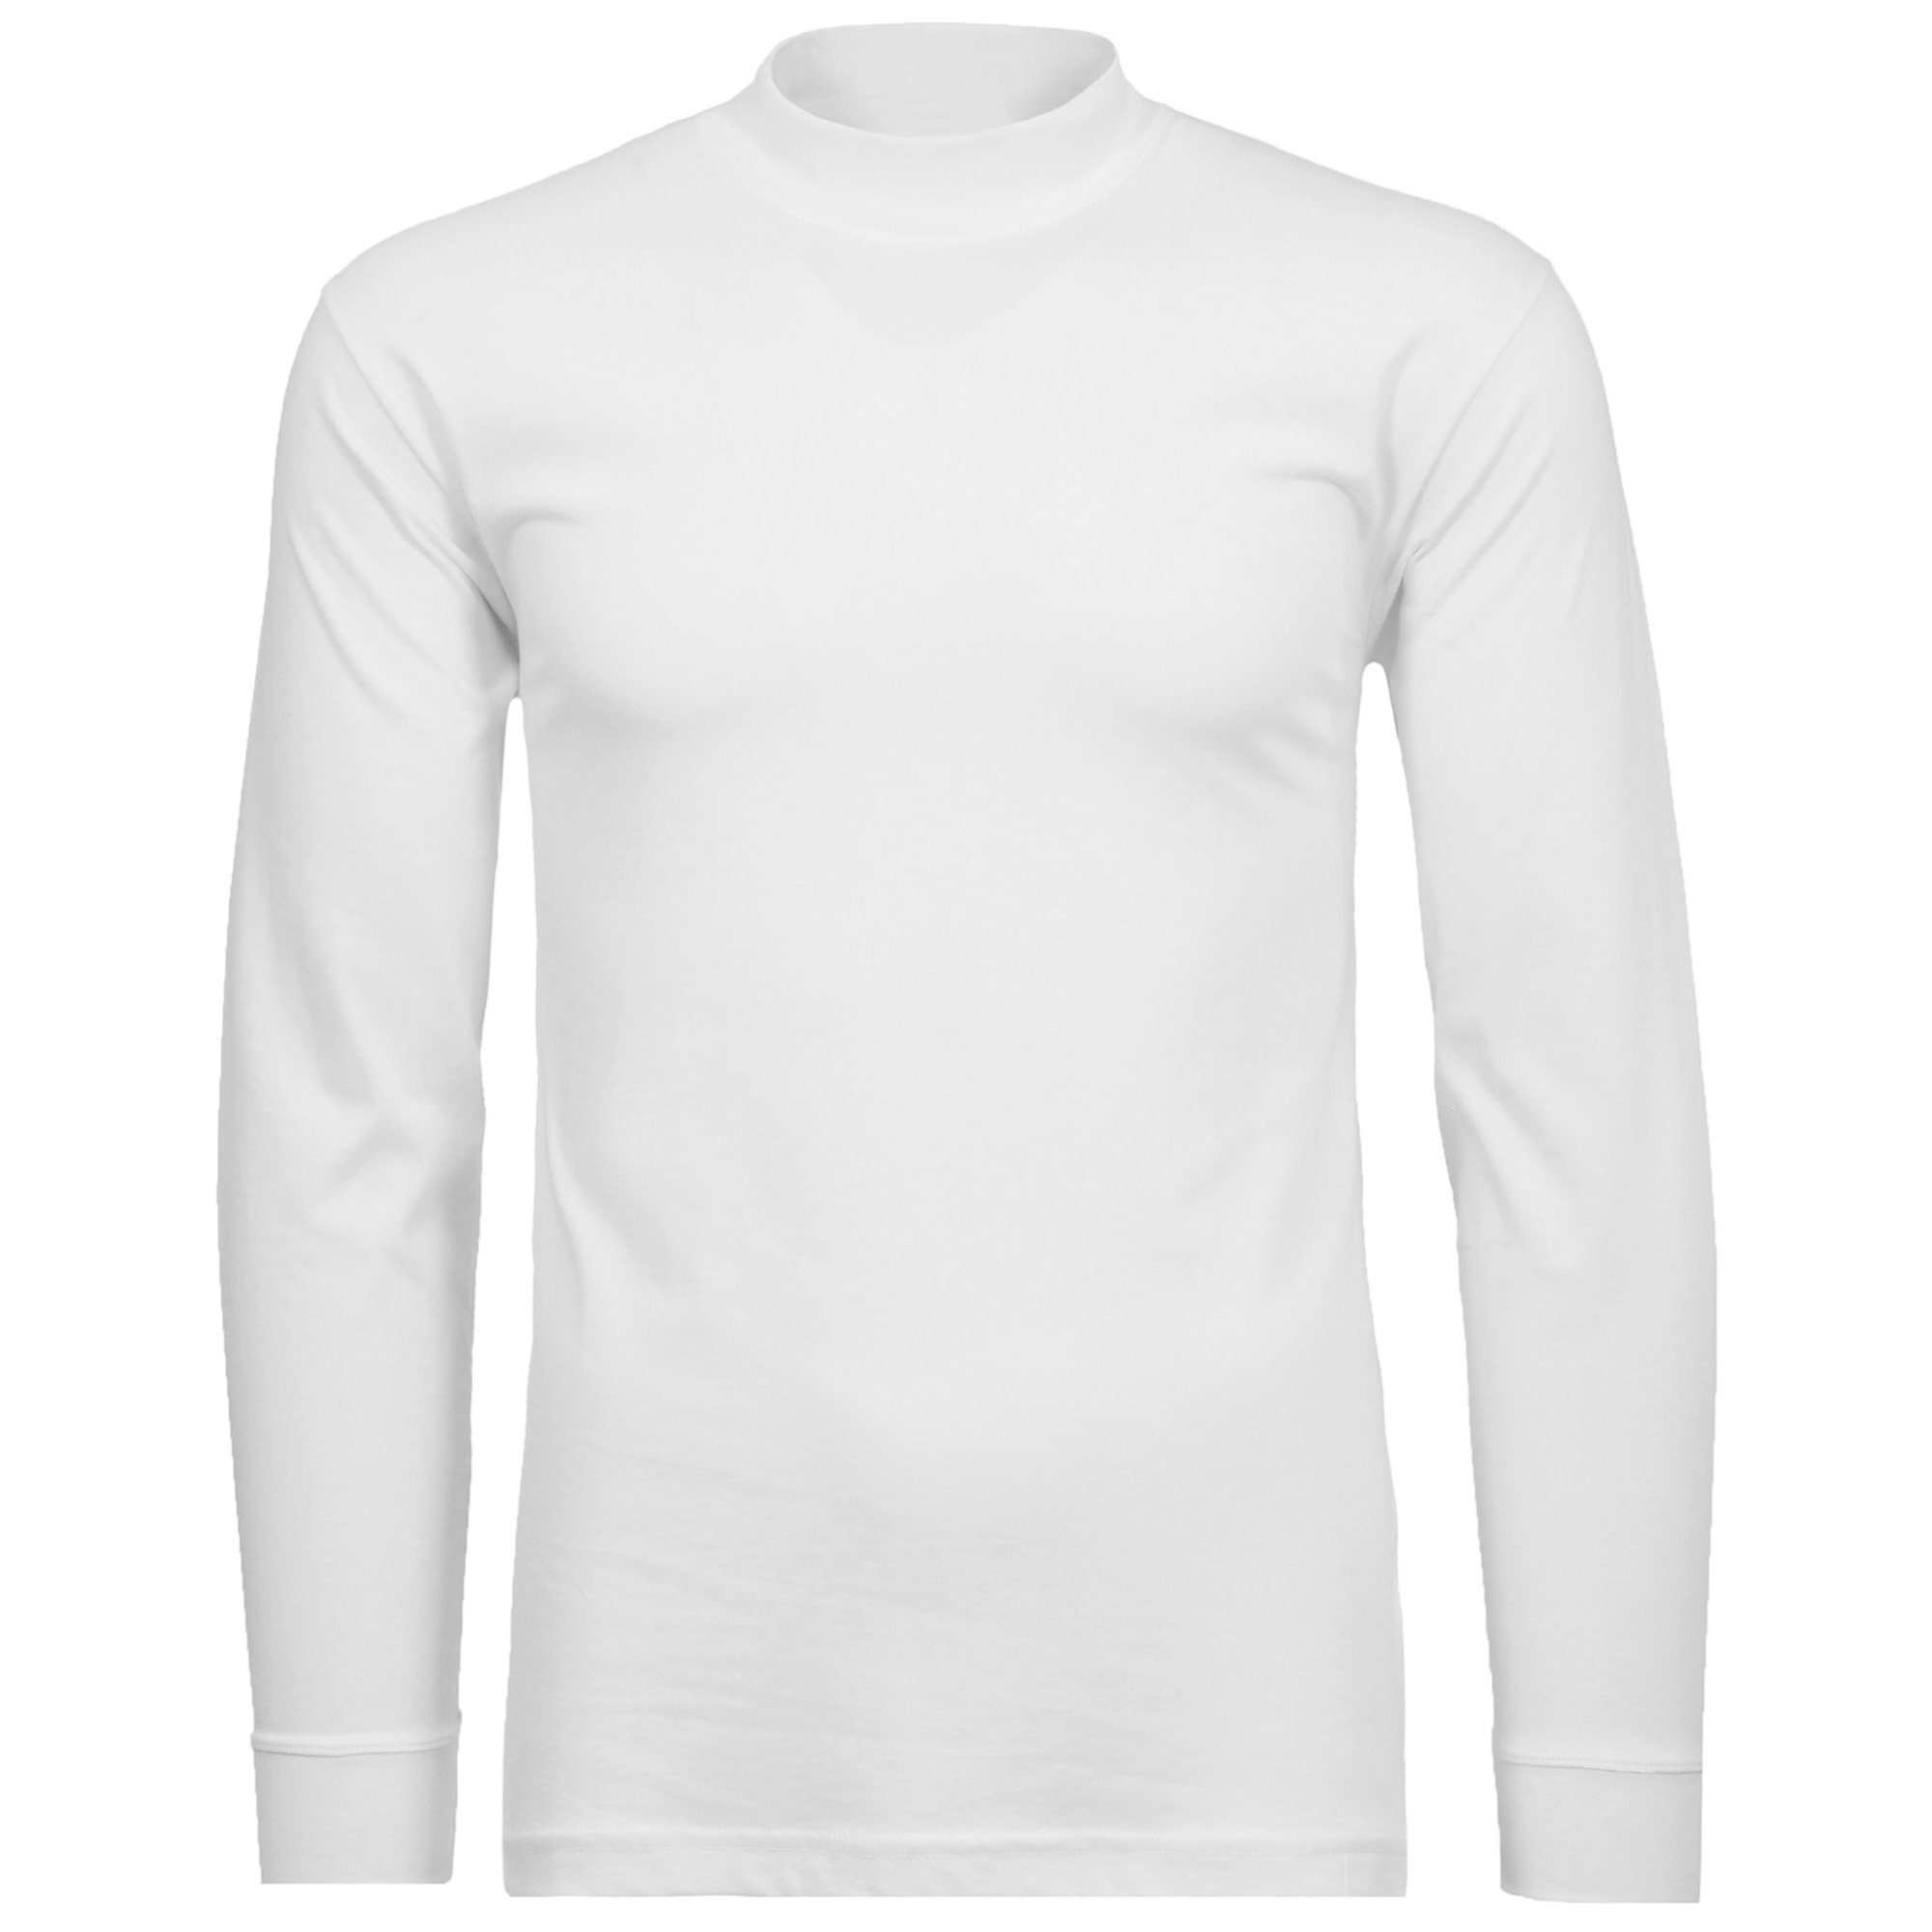 RAGMAN Sweatshirt Herren - Basic Langarm Stehkragen-Pullover Weiß